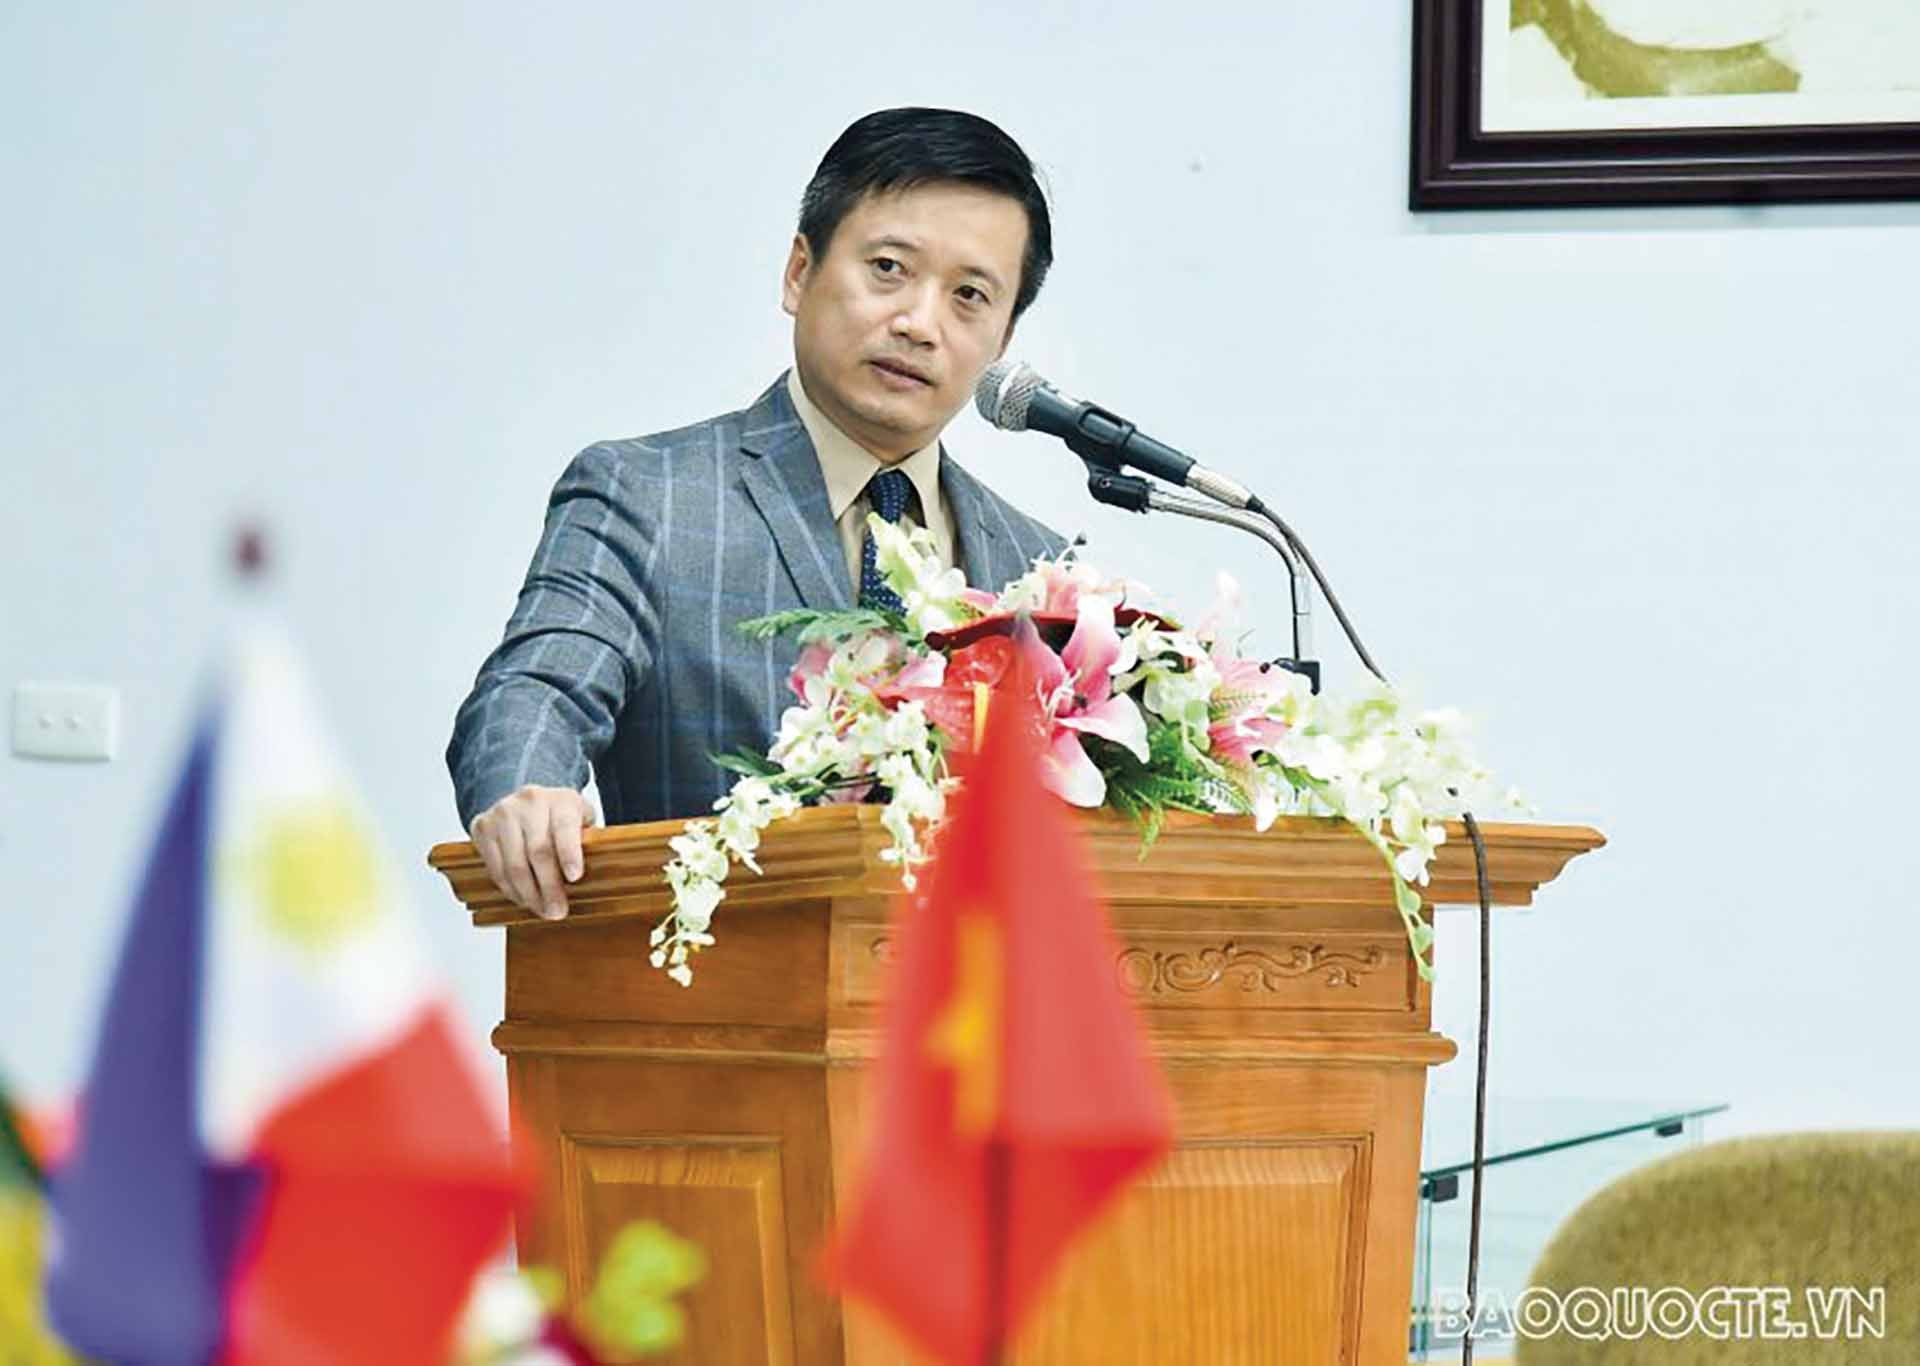 TS. Nguyễn Hùng Sơn, Phó Giám đốc Học viện Ngoại giao